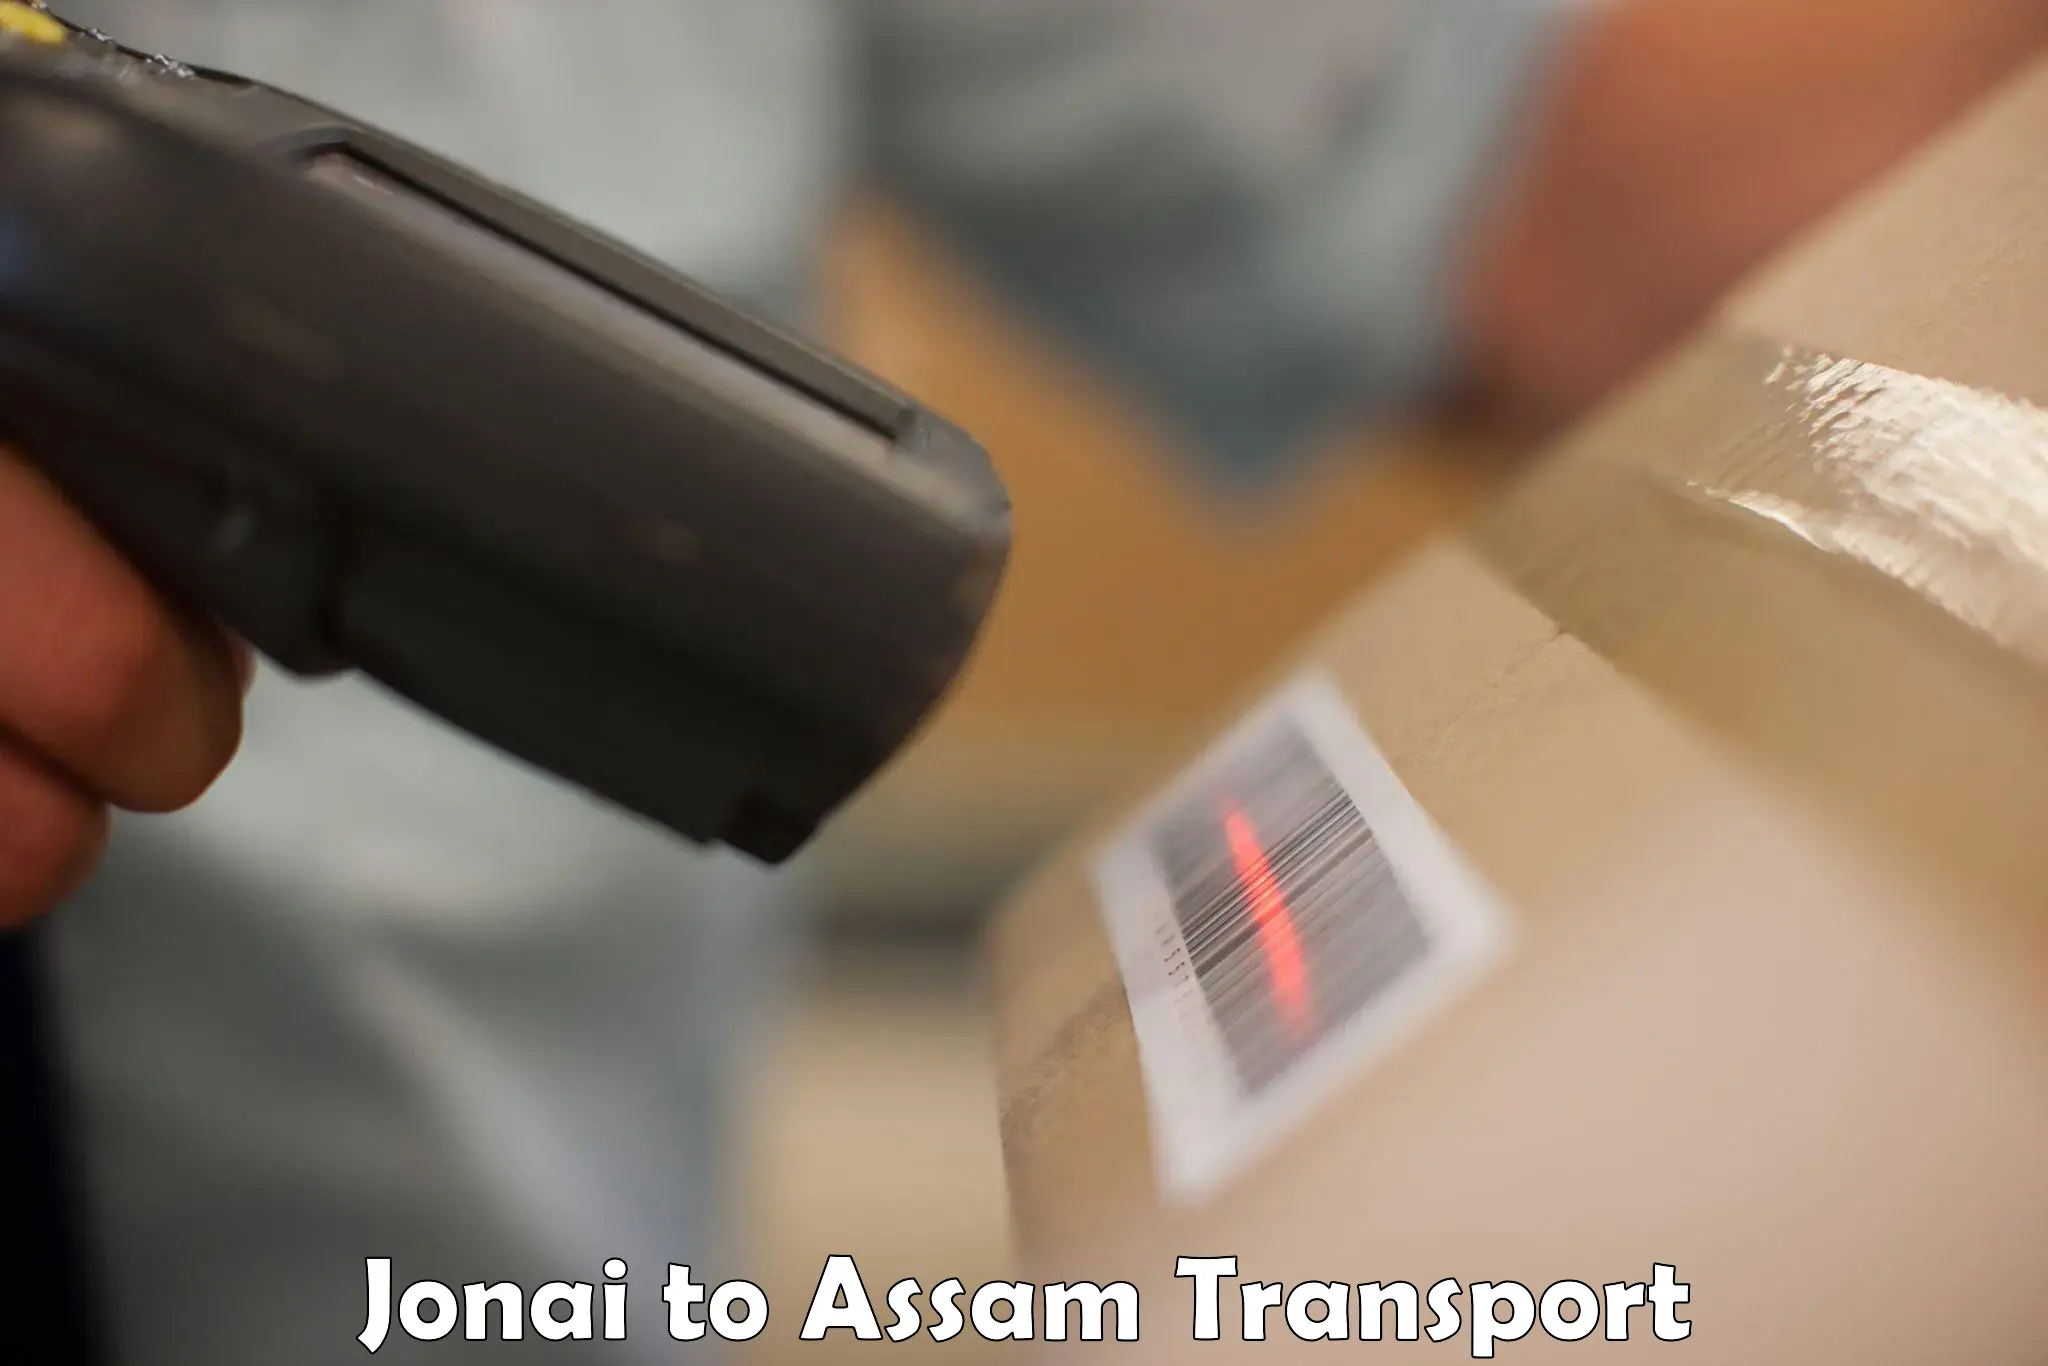 Road transport online services Jonai to Jonai